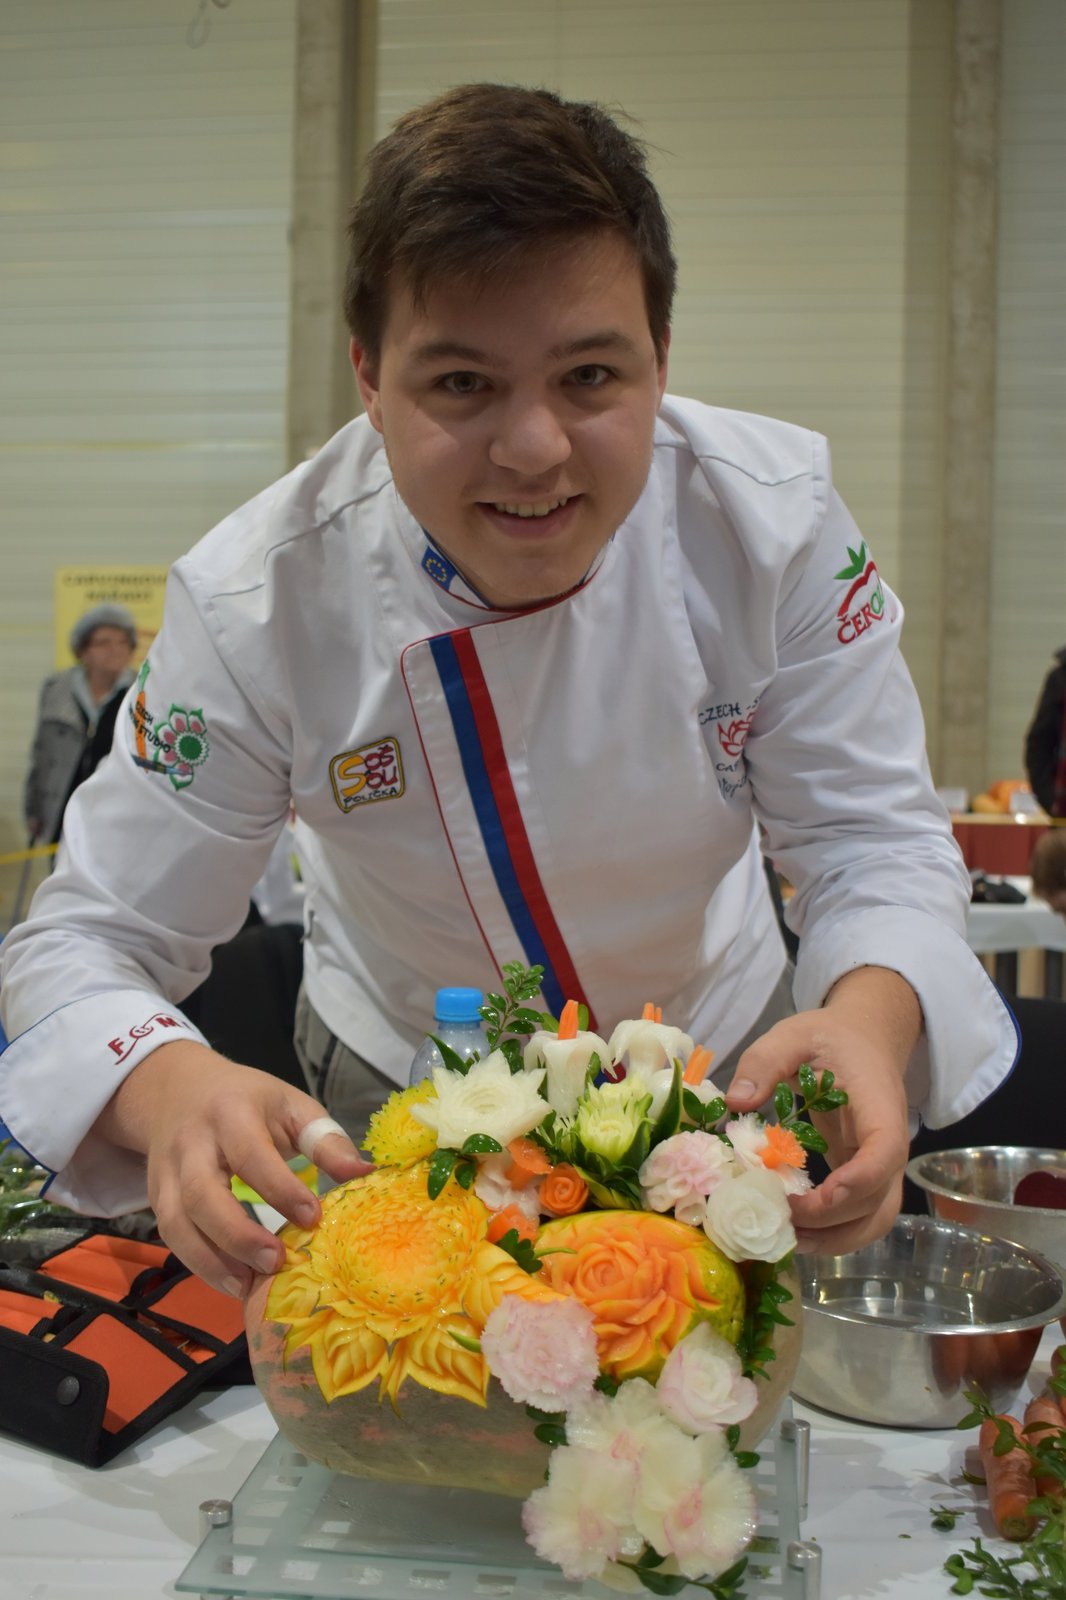 Zkušený řezbář Vojtěch Petržela, zlatý medailista světové gastronomické soutěže, patří k české řezbářské špičce. Na snímku se svojí soutěžní kyticí.